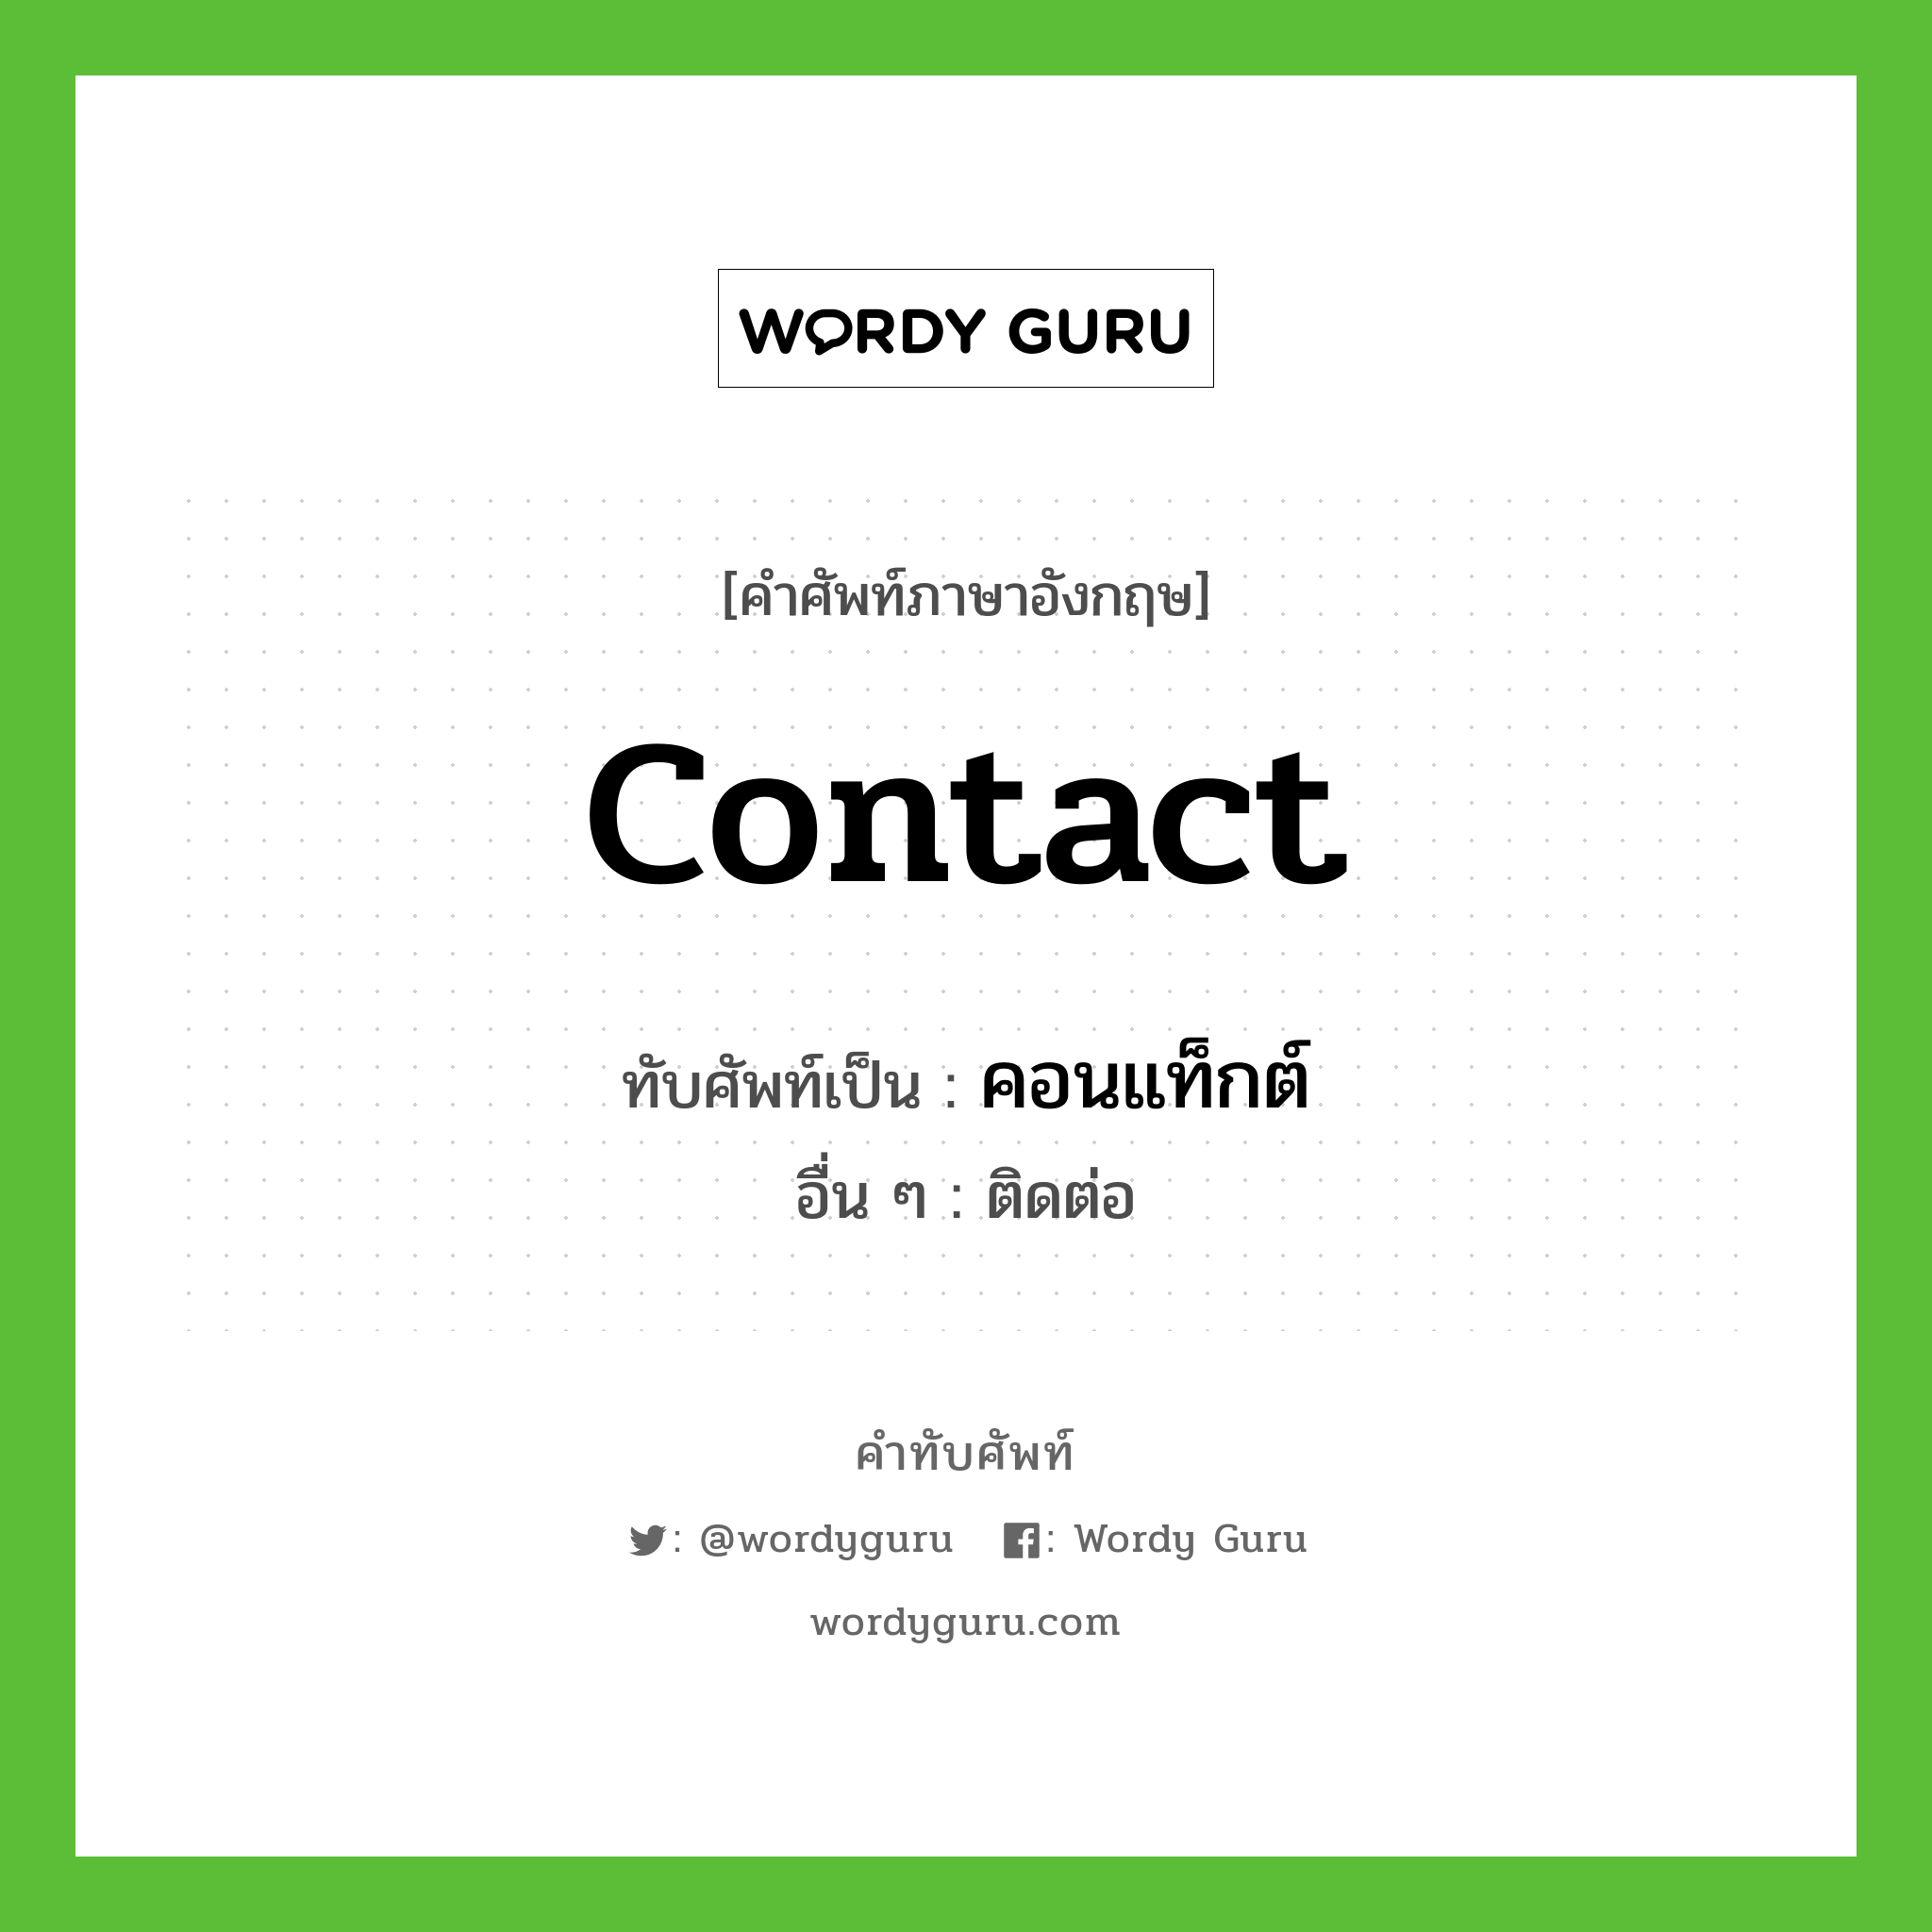 Contact เขียนเป็นคำไทยว่าอะไร?, คำศัพท์ภาษาอังกฤษ Contact ทับศัพท์เป็น คอนแท็กต์ อื่น ๆ ติดต่อ